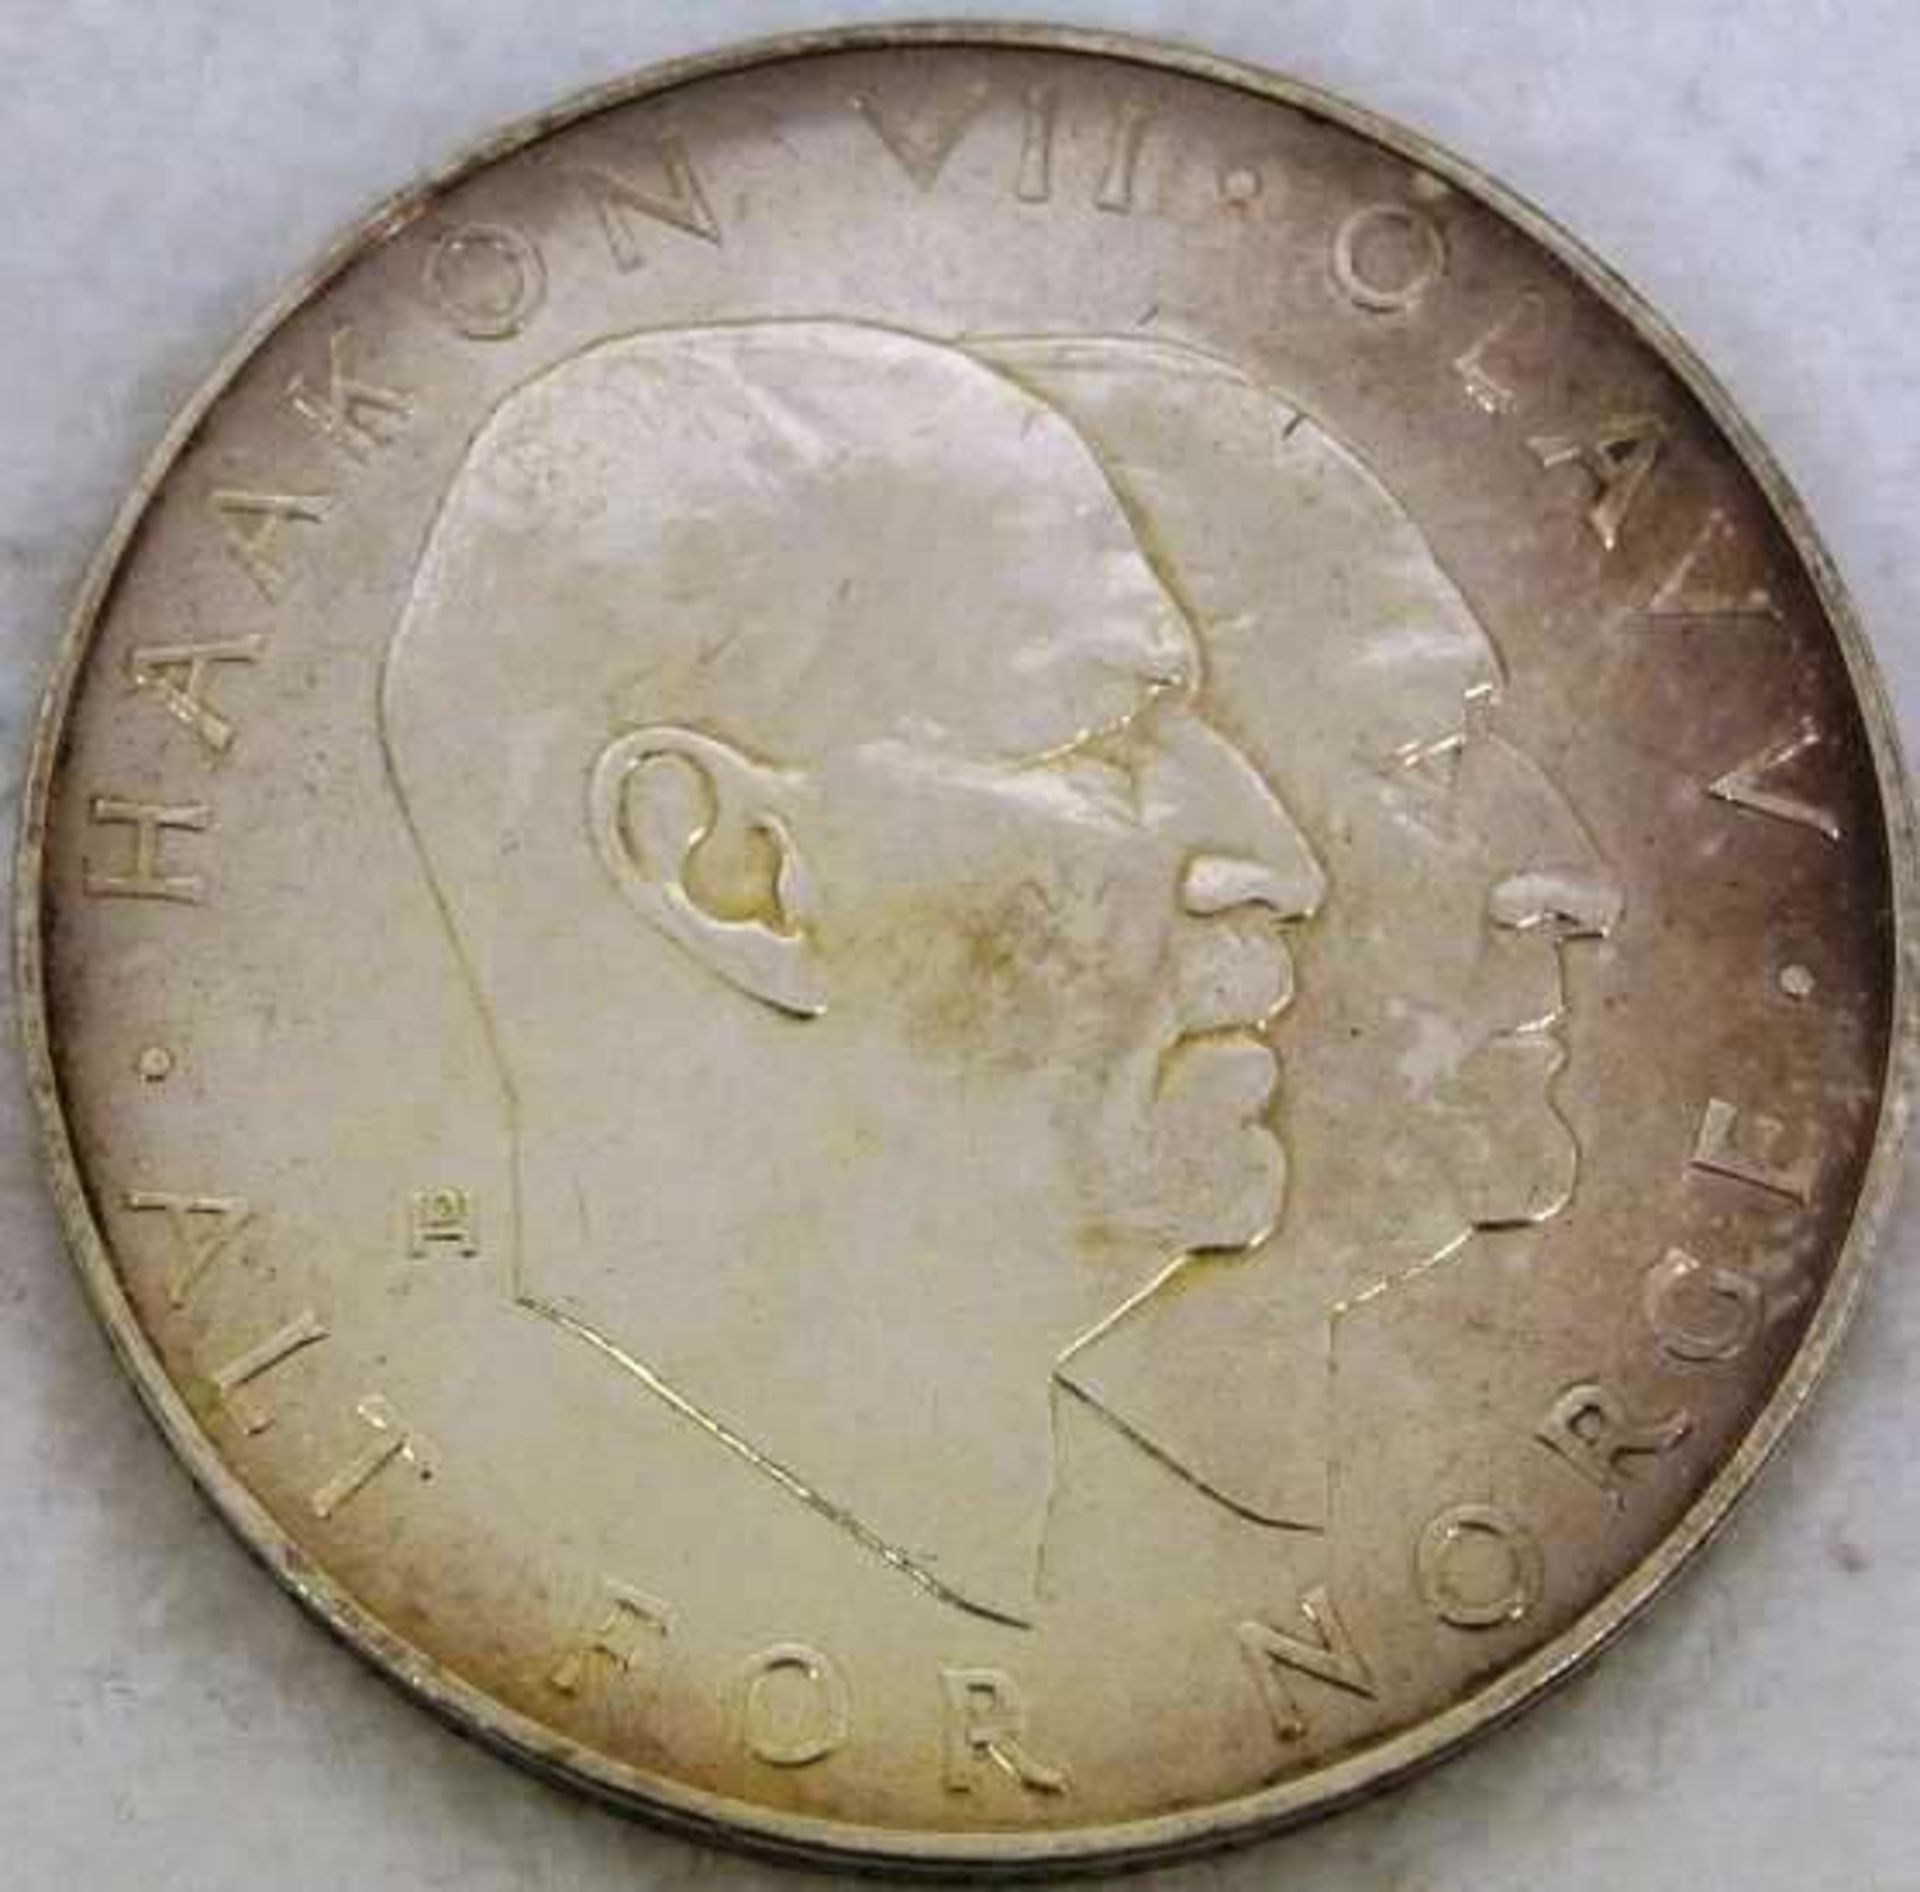 Norwegen, Silbermünze, 25 Kronen 1970, Hakkon und Olav - Bild 2 aus 2